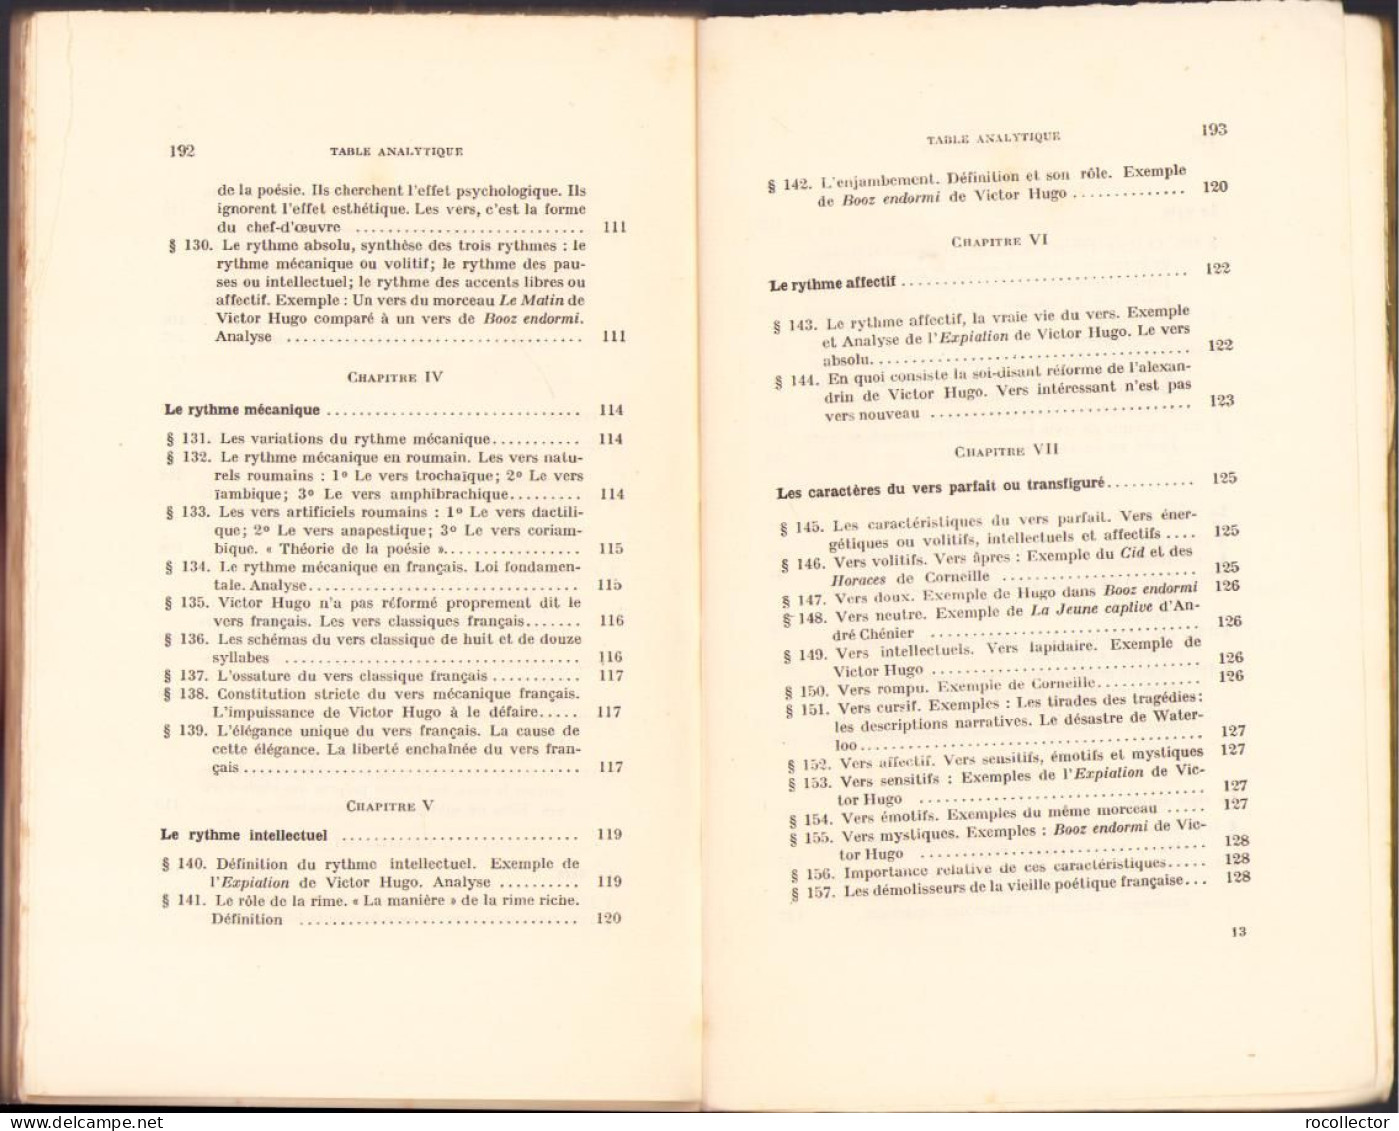 La Science de la Littérature par Mihail Dragomirescu, tome IV, 1938 Paris C1654